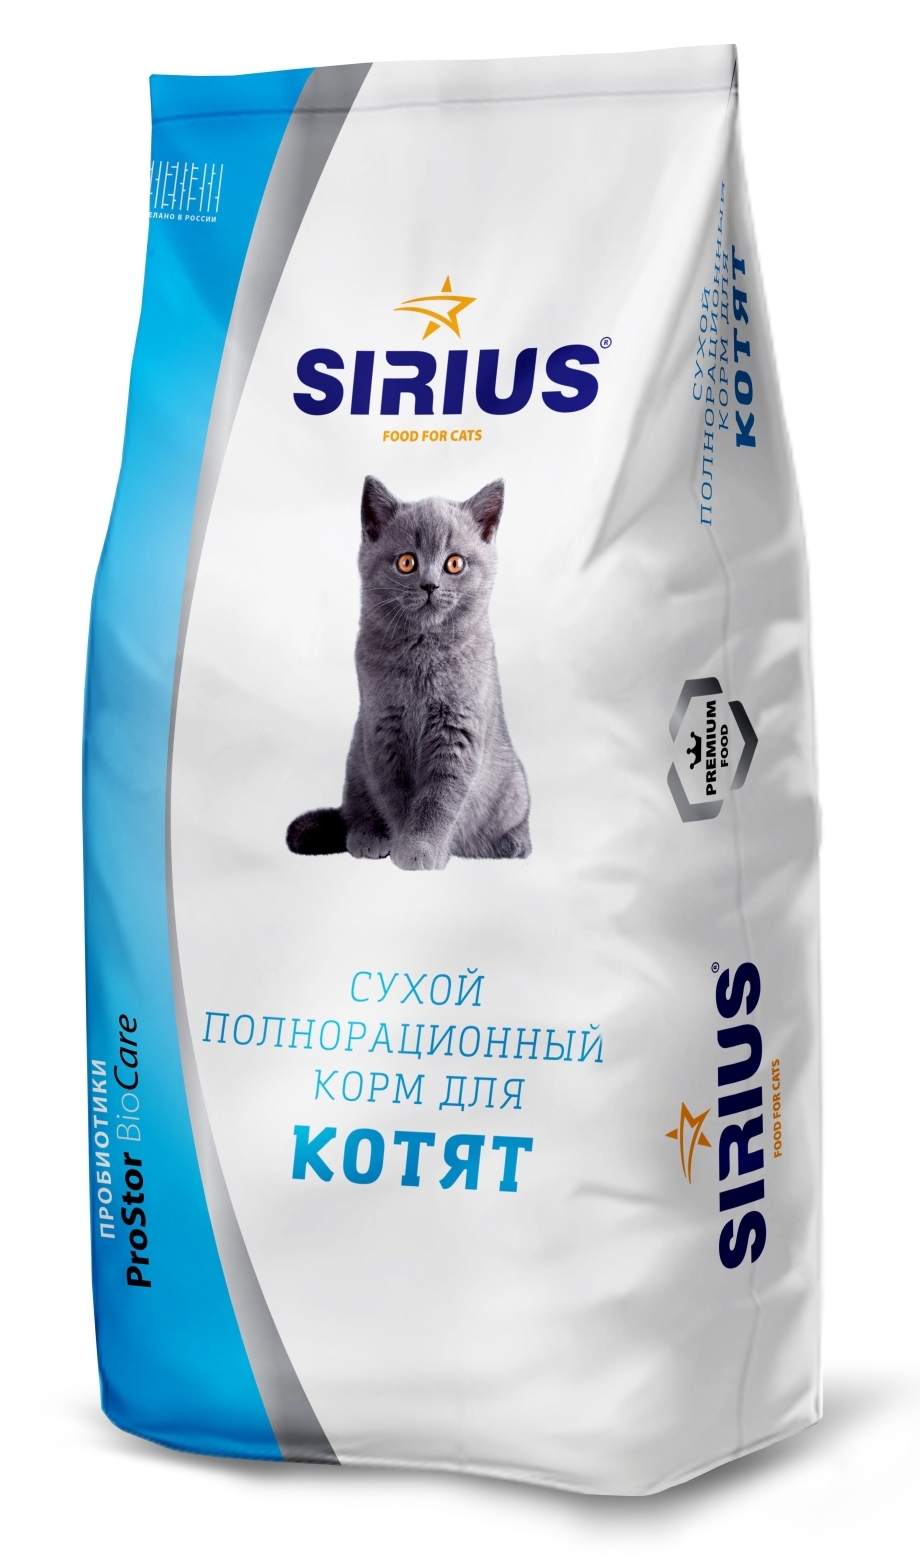 Сириус сухой корм для котят 1.5 кг